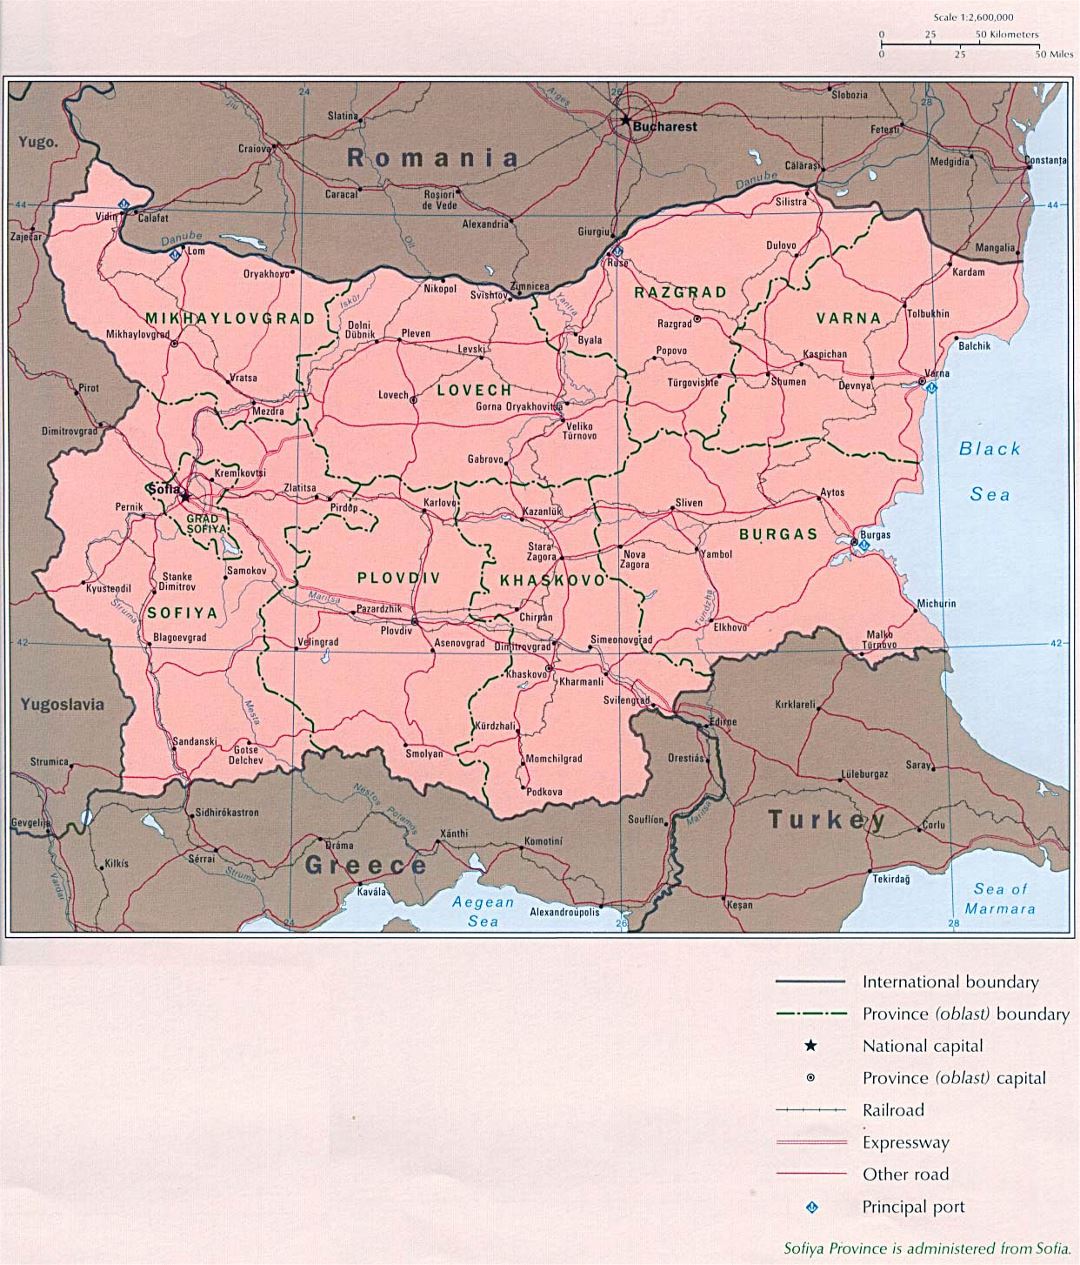 Mapa político y administrativo grande de Bulgaria con las carreteras y ciudades principales